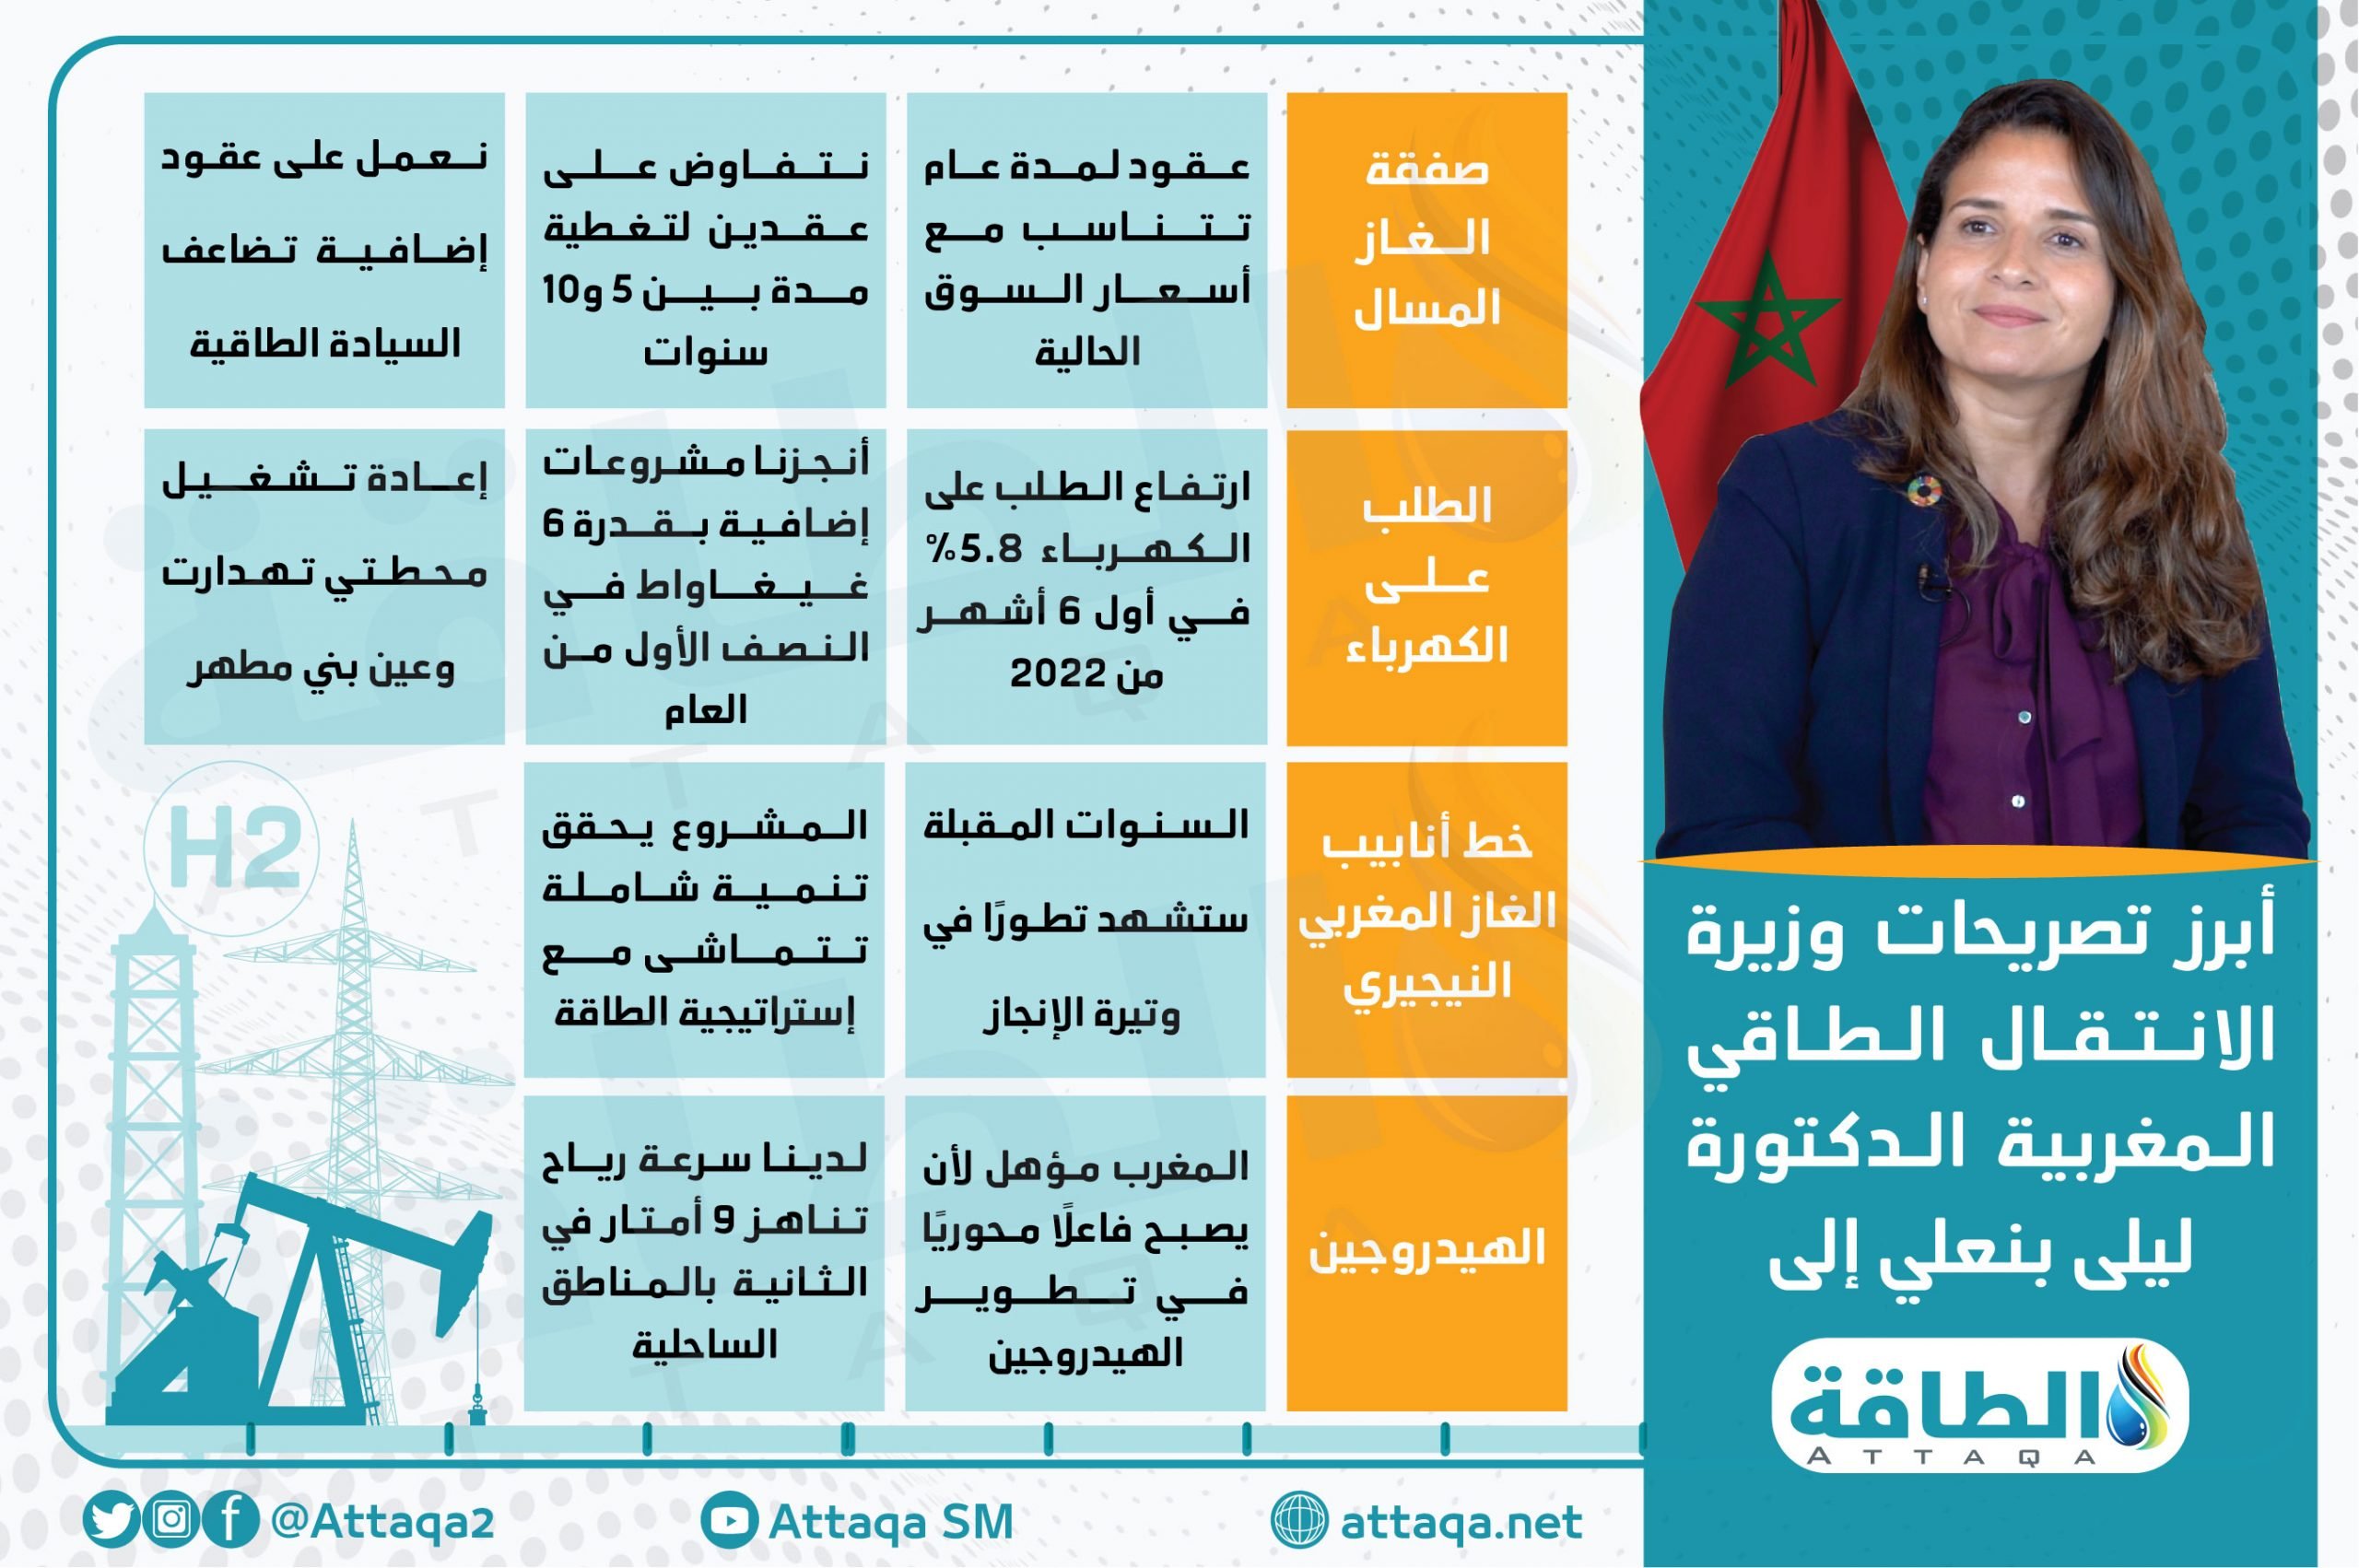 وزيرة الطاقة في المغرب ليلى بنعلي